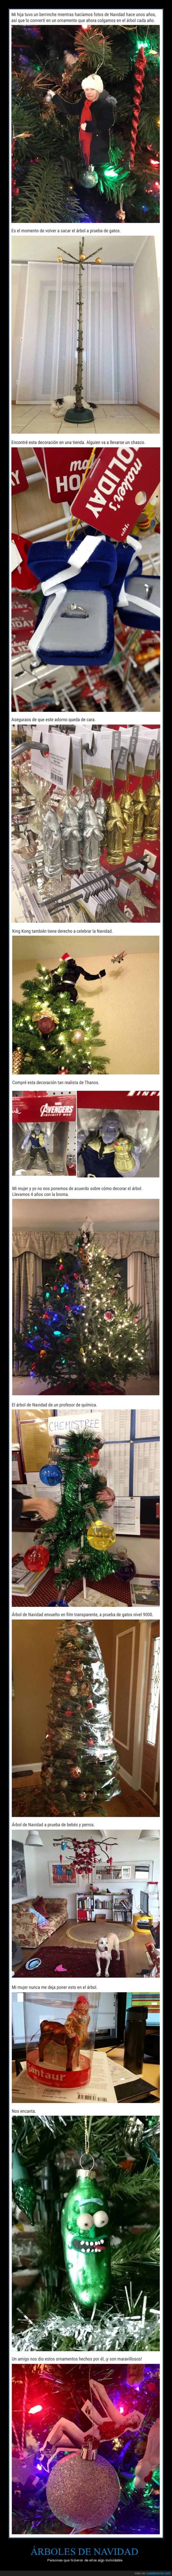 árboles de navidad,wtf,navidad